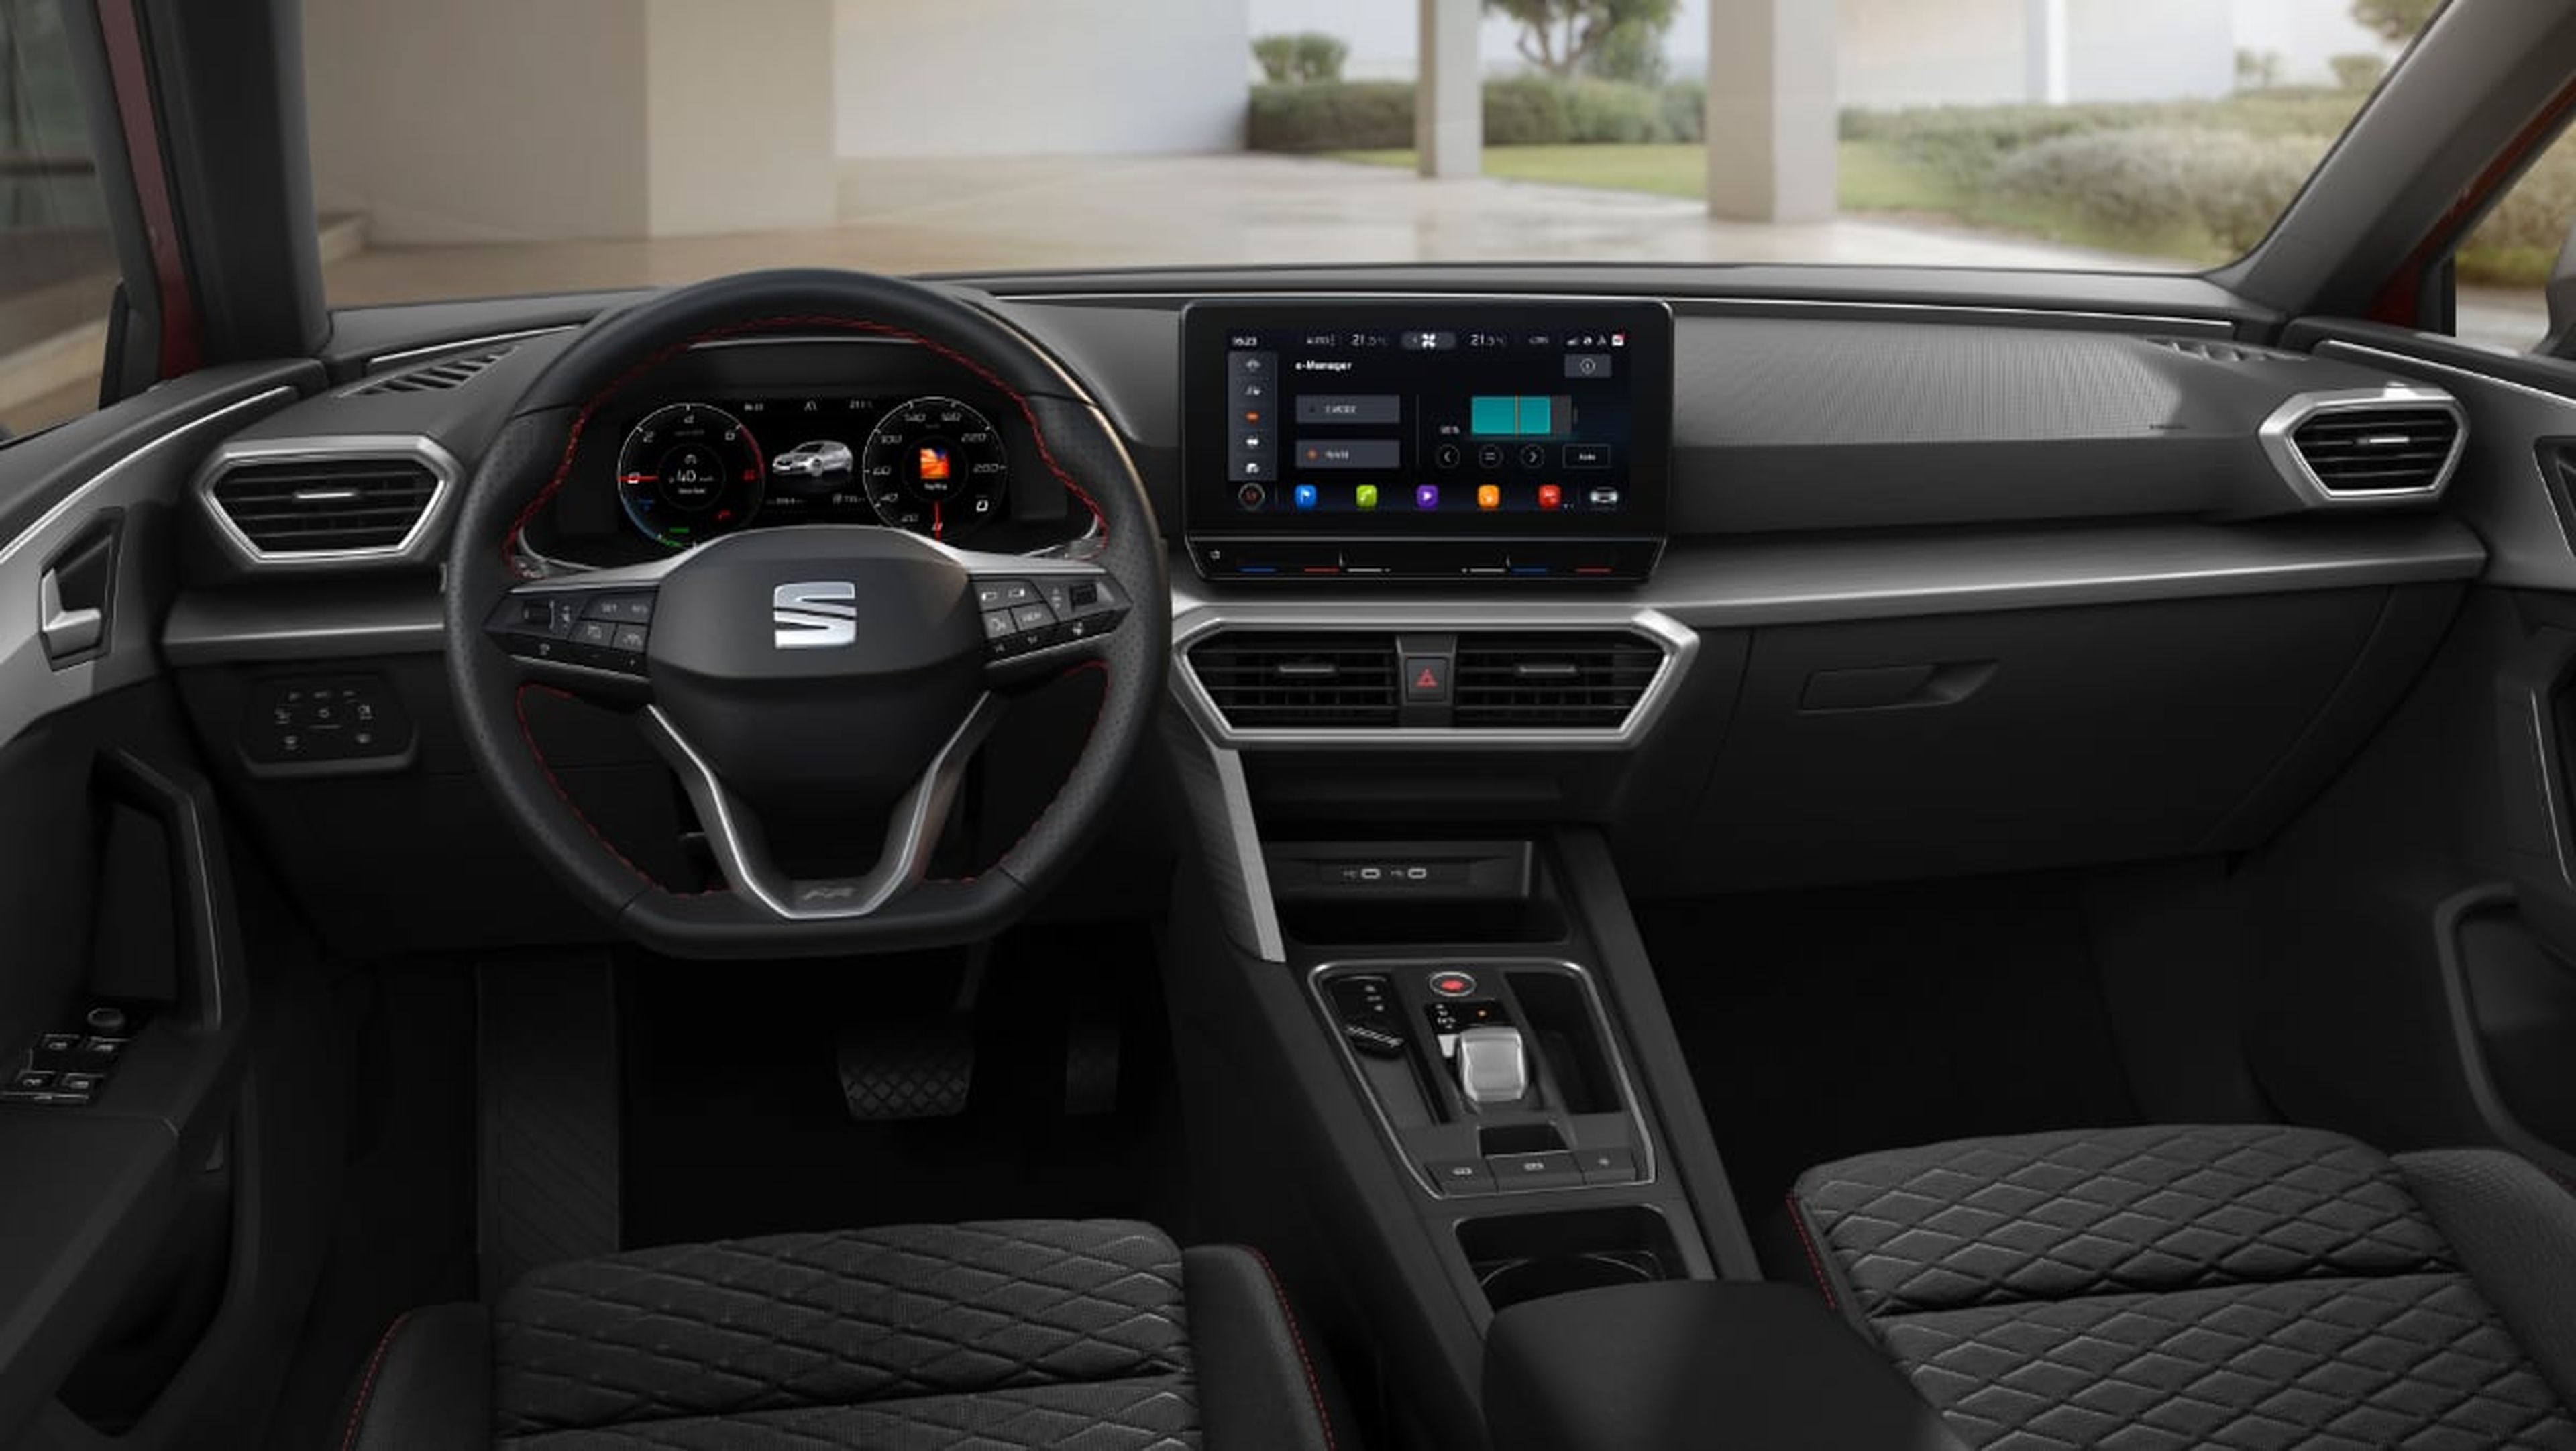 Seat León híbrido vs Volkswagen Golf híbrido